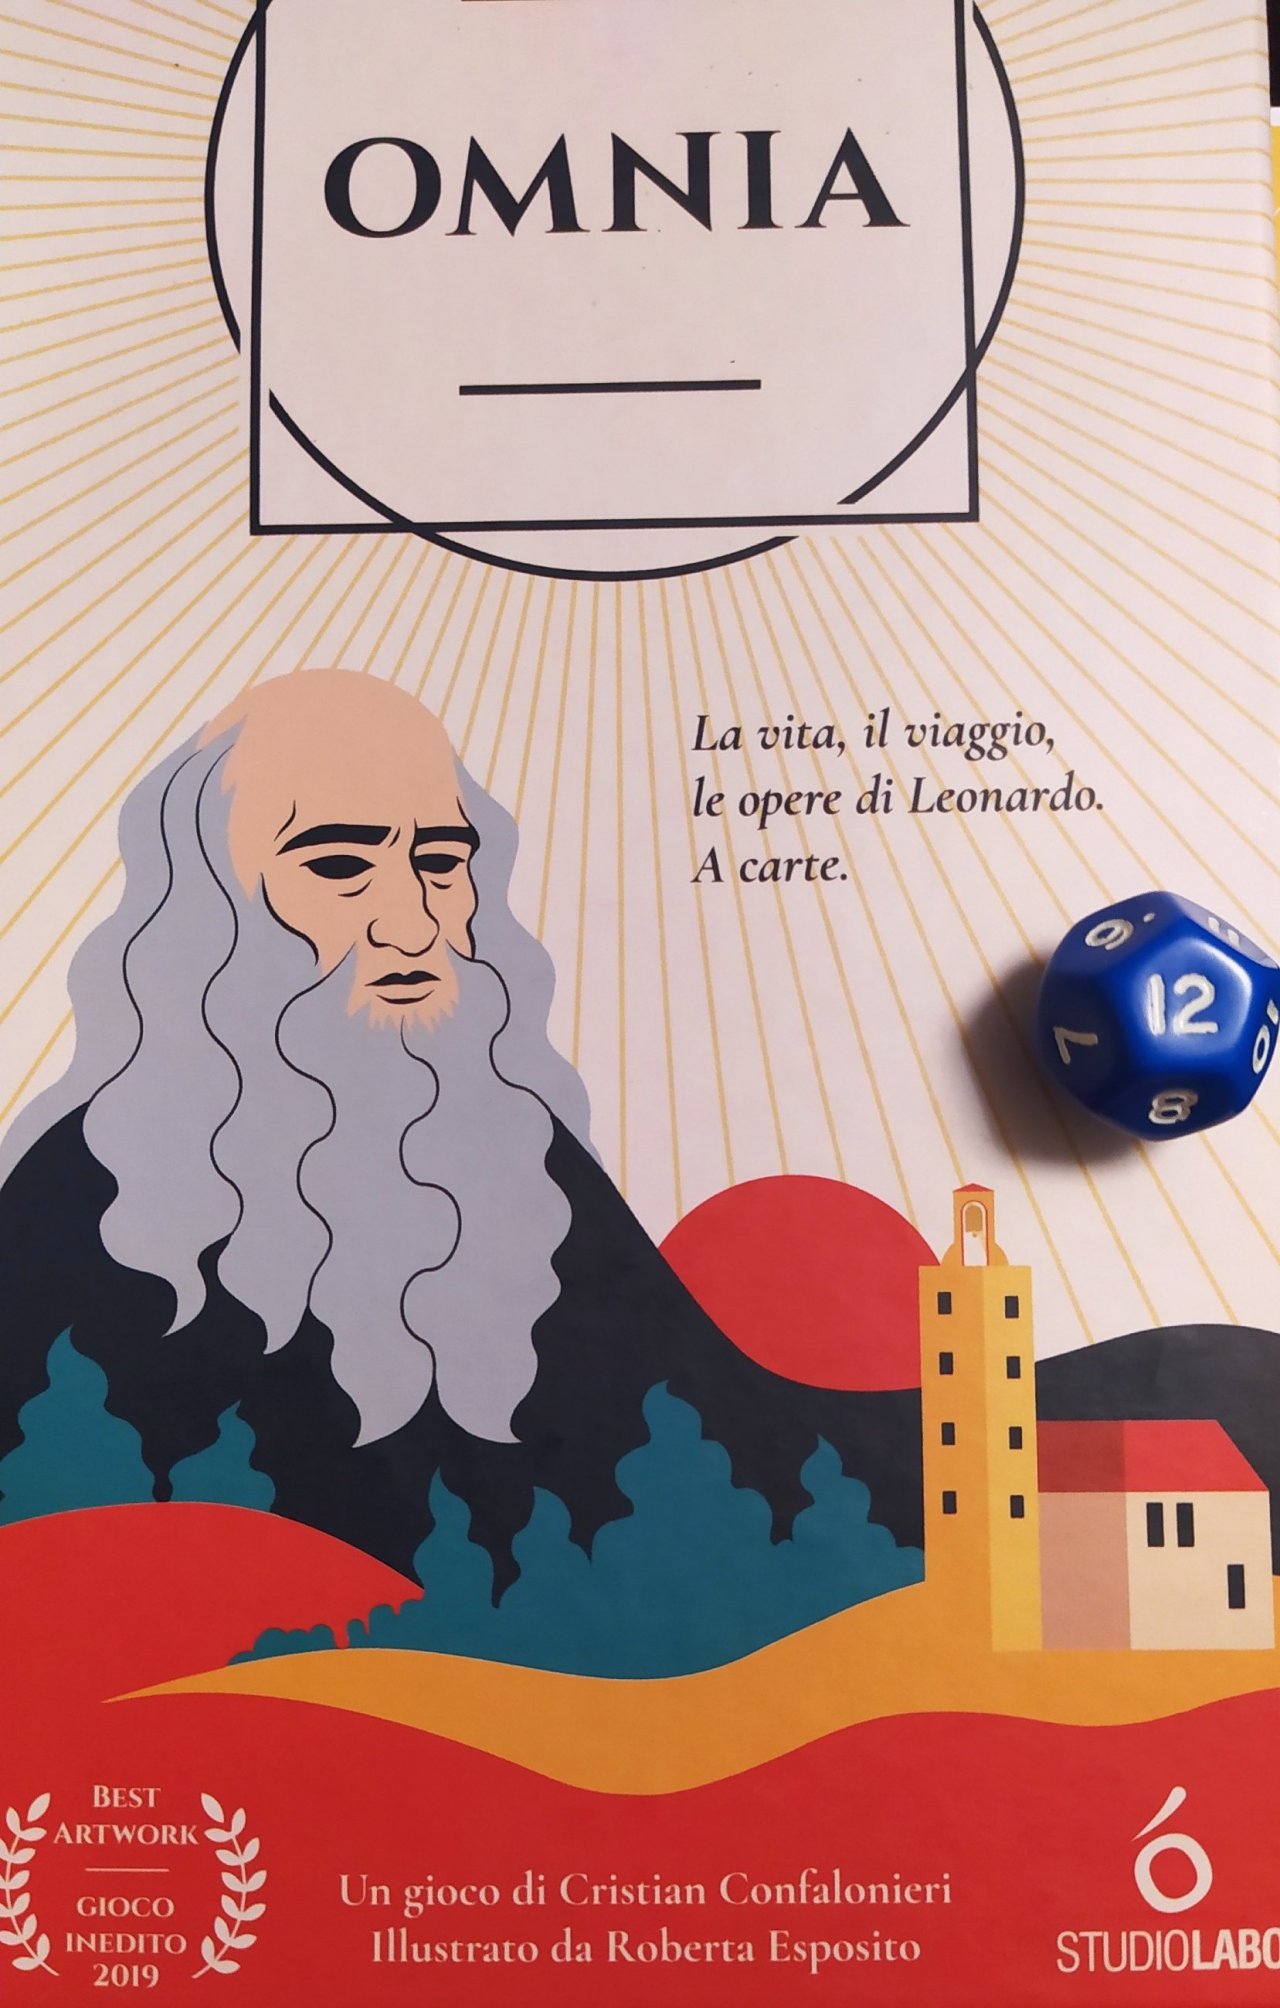 Recensione Omnia, ovvero Leonardo da Vinci in un gioco | La Tana dei Goblin